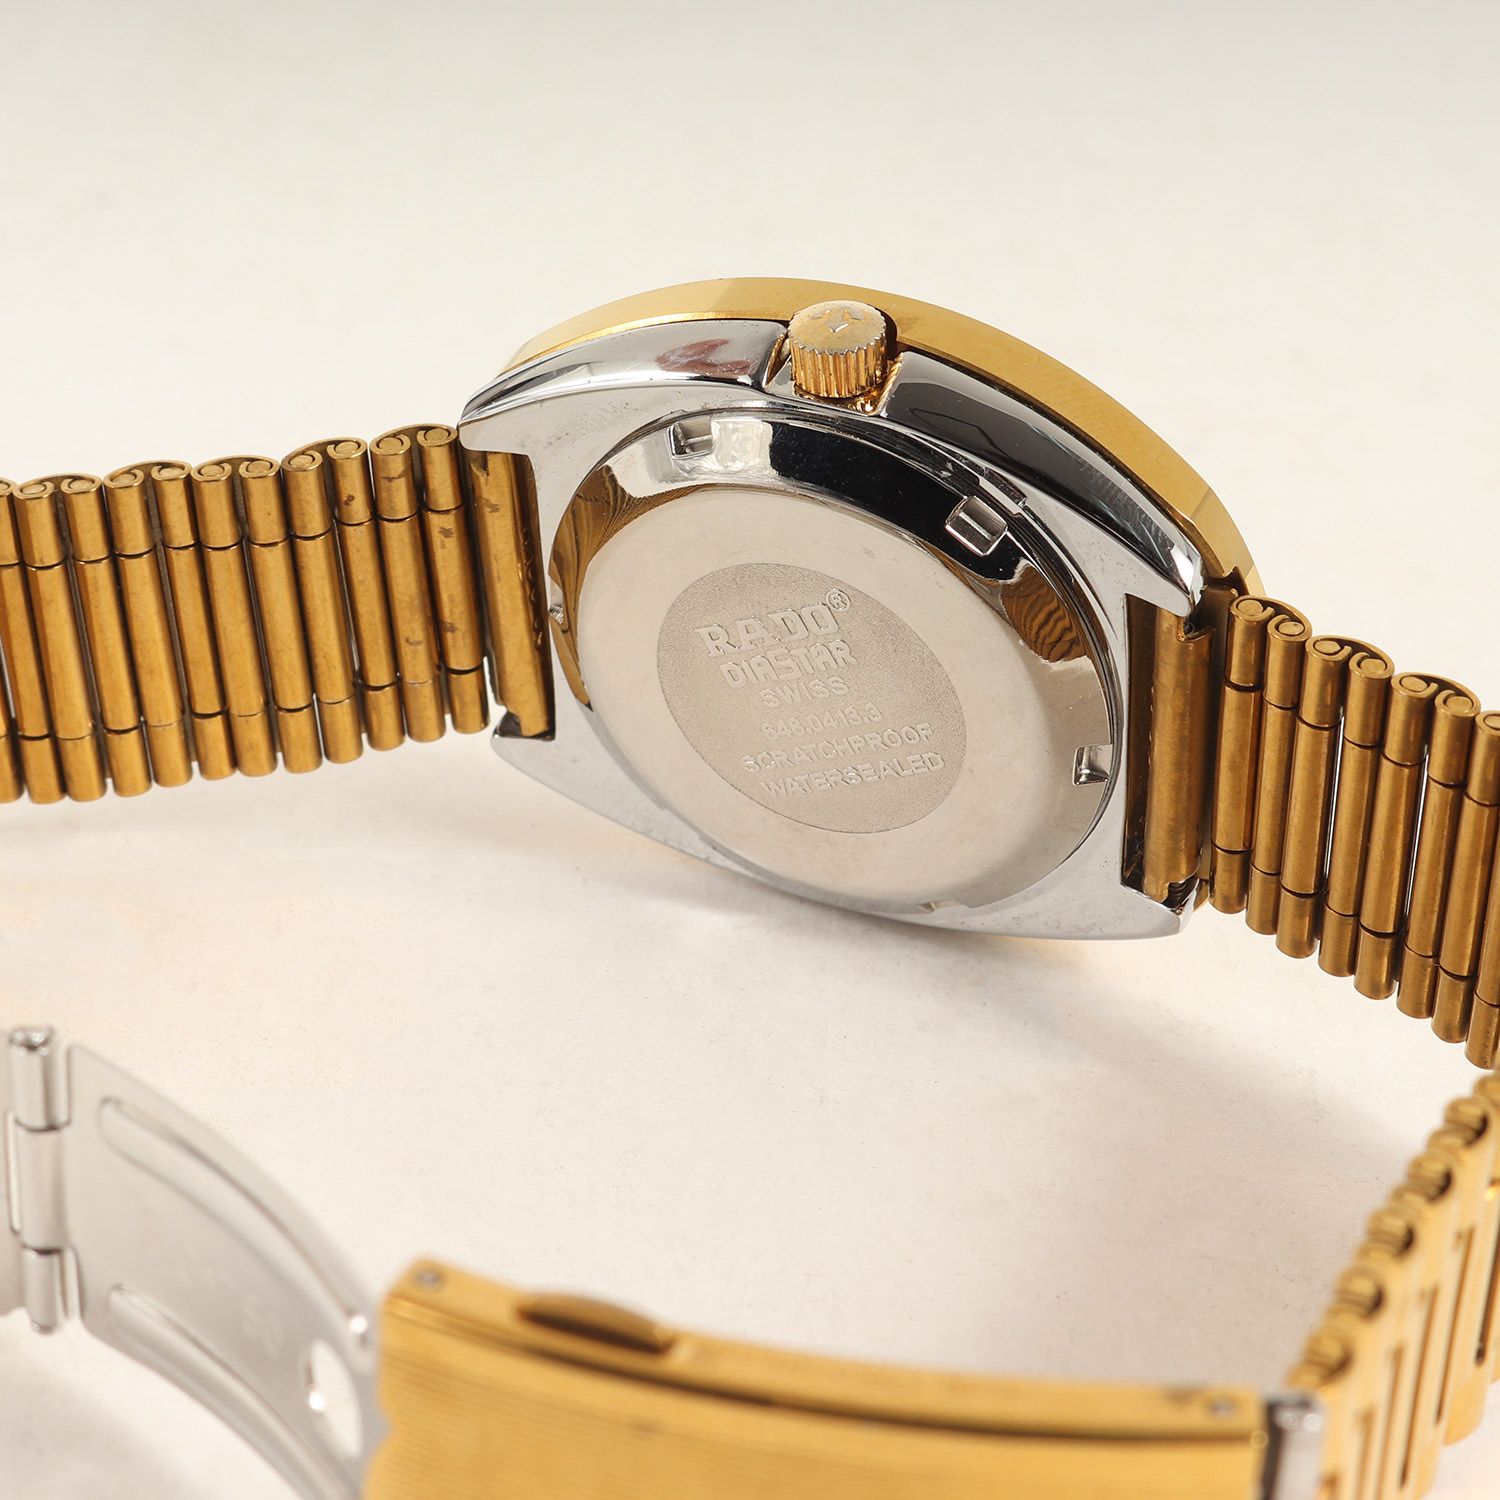 【通販販売】ラドー「DIASTAR/ダイヤスター」648.0413.3 自動巻 メンズ 腕時計 ラドー